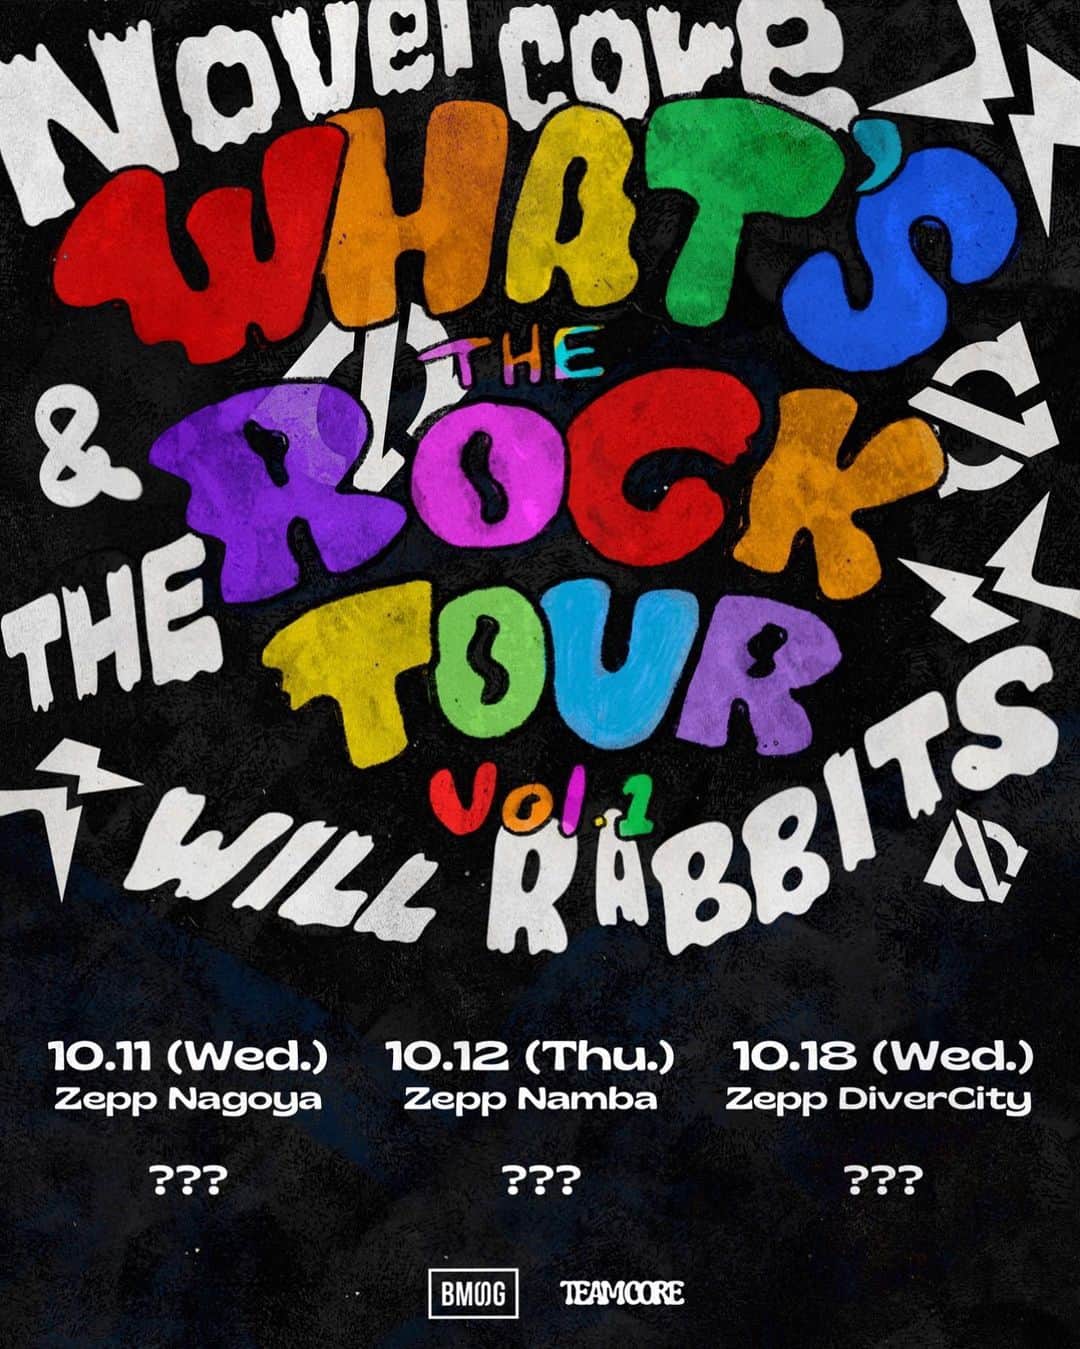 Novel Coreのインスタグラム：「⁡ ⁡Novel Core初の対バンツアー "WHAT'S THE ROCK TOUR vol.1" ⁡ 10月、全国3都市（東名阪）のZeppにて『完全ボーダーレス』をテーマに掲げた対バンツアーを開催します。 ⁡ 全公演、俺のハウスバンド "THE WILL RABBITS" と共に周ります。 ⁡ vol.1という表記の通り、今後もこの対バンツアーはシリーズ化していくんですが、記念すべき第1弾となる今回は "武道館公演に向けてのミュージシャンとしての武者修行" をテーマに、尊敬する先輩アーティスト3組（各都市1組ずつ）にオファーさせて頂きました。 ⁡ 対バンアーティストも近日発表します。 ⁡ 絶対遊びに来てください！絶対楽しいから！ ⁡ 【ツアースケジュール】 10月11日(水) at Zepp Nagoya 開場: 18:00 / 開演: 19:00 (お問合せ: サンデーフォークプロモーション 052-320-9100) ⁡ 10月12日(木) at Zepp Namba 開場: 18:00 / 開演: 19:00 (お問合せ: 夢番地 大阪 06-6341-3525) ⁡ 10月18日(水) at Zepp DiverCity (TOKYO) 開場: 18:00 / 開演: 19:00 (お問合せ: クリエイティブマン 03-3499-6669) ⁡ 【チケット情報】 ⚫︎スタンディング 一般: ¥6,000 (税込) / 学生: ¥5,000 (税込) ⚫︎指定席 一般: ¥6,500 (税込) / 学生: ¥5,500 (税込) ⁡ ① CORE HOUSE 先行受付 (※抽選) 8/29(火) 12:00 ~ 9/3(日) 23:59 ⁡ ② B-Town 先行受付 (※抽選) 9/7(木) 12:00 ~ 9/11(月) 23:59 ⁡ ③ 一般先行受付 (※抽選) 9/15(金) 12:00 ~ 9/19(火) 23:59 ⁡ ④ 一般受付 (※先着順) 9/30(土) 10:00 ~ ⁡ #WHATSTHEROCK_TOUR」